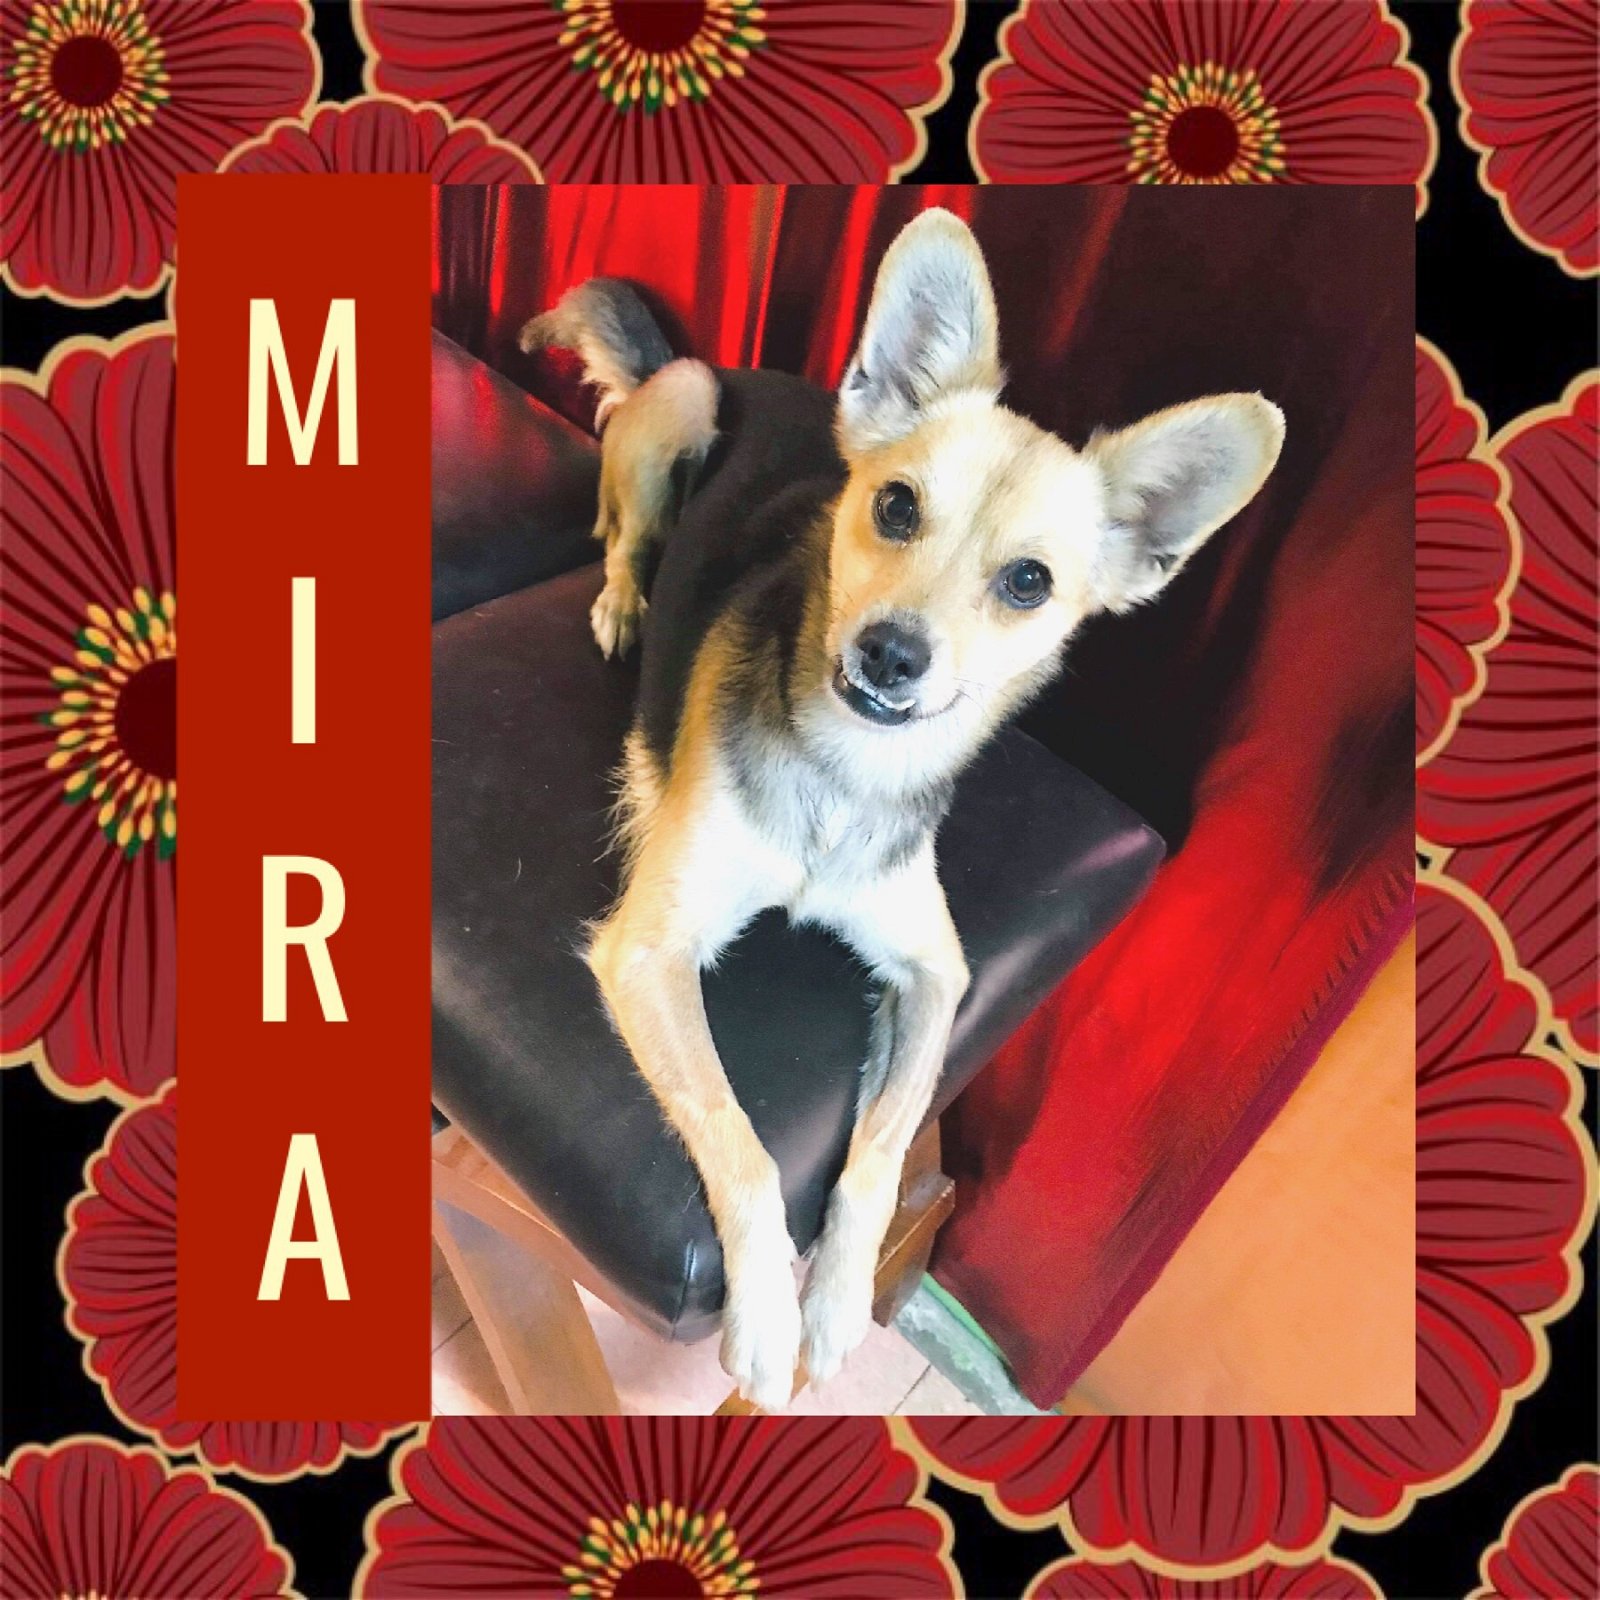 adoptable Dog in Littleton, CO named Mira